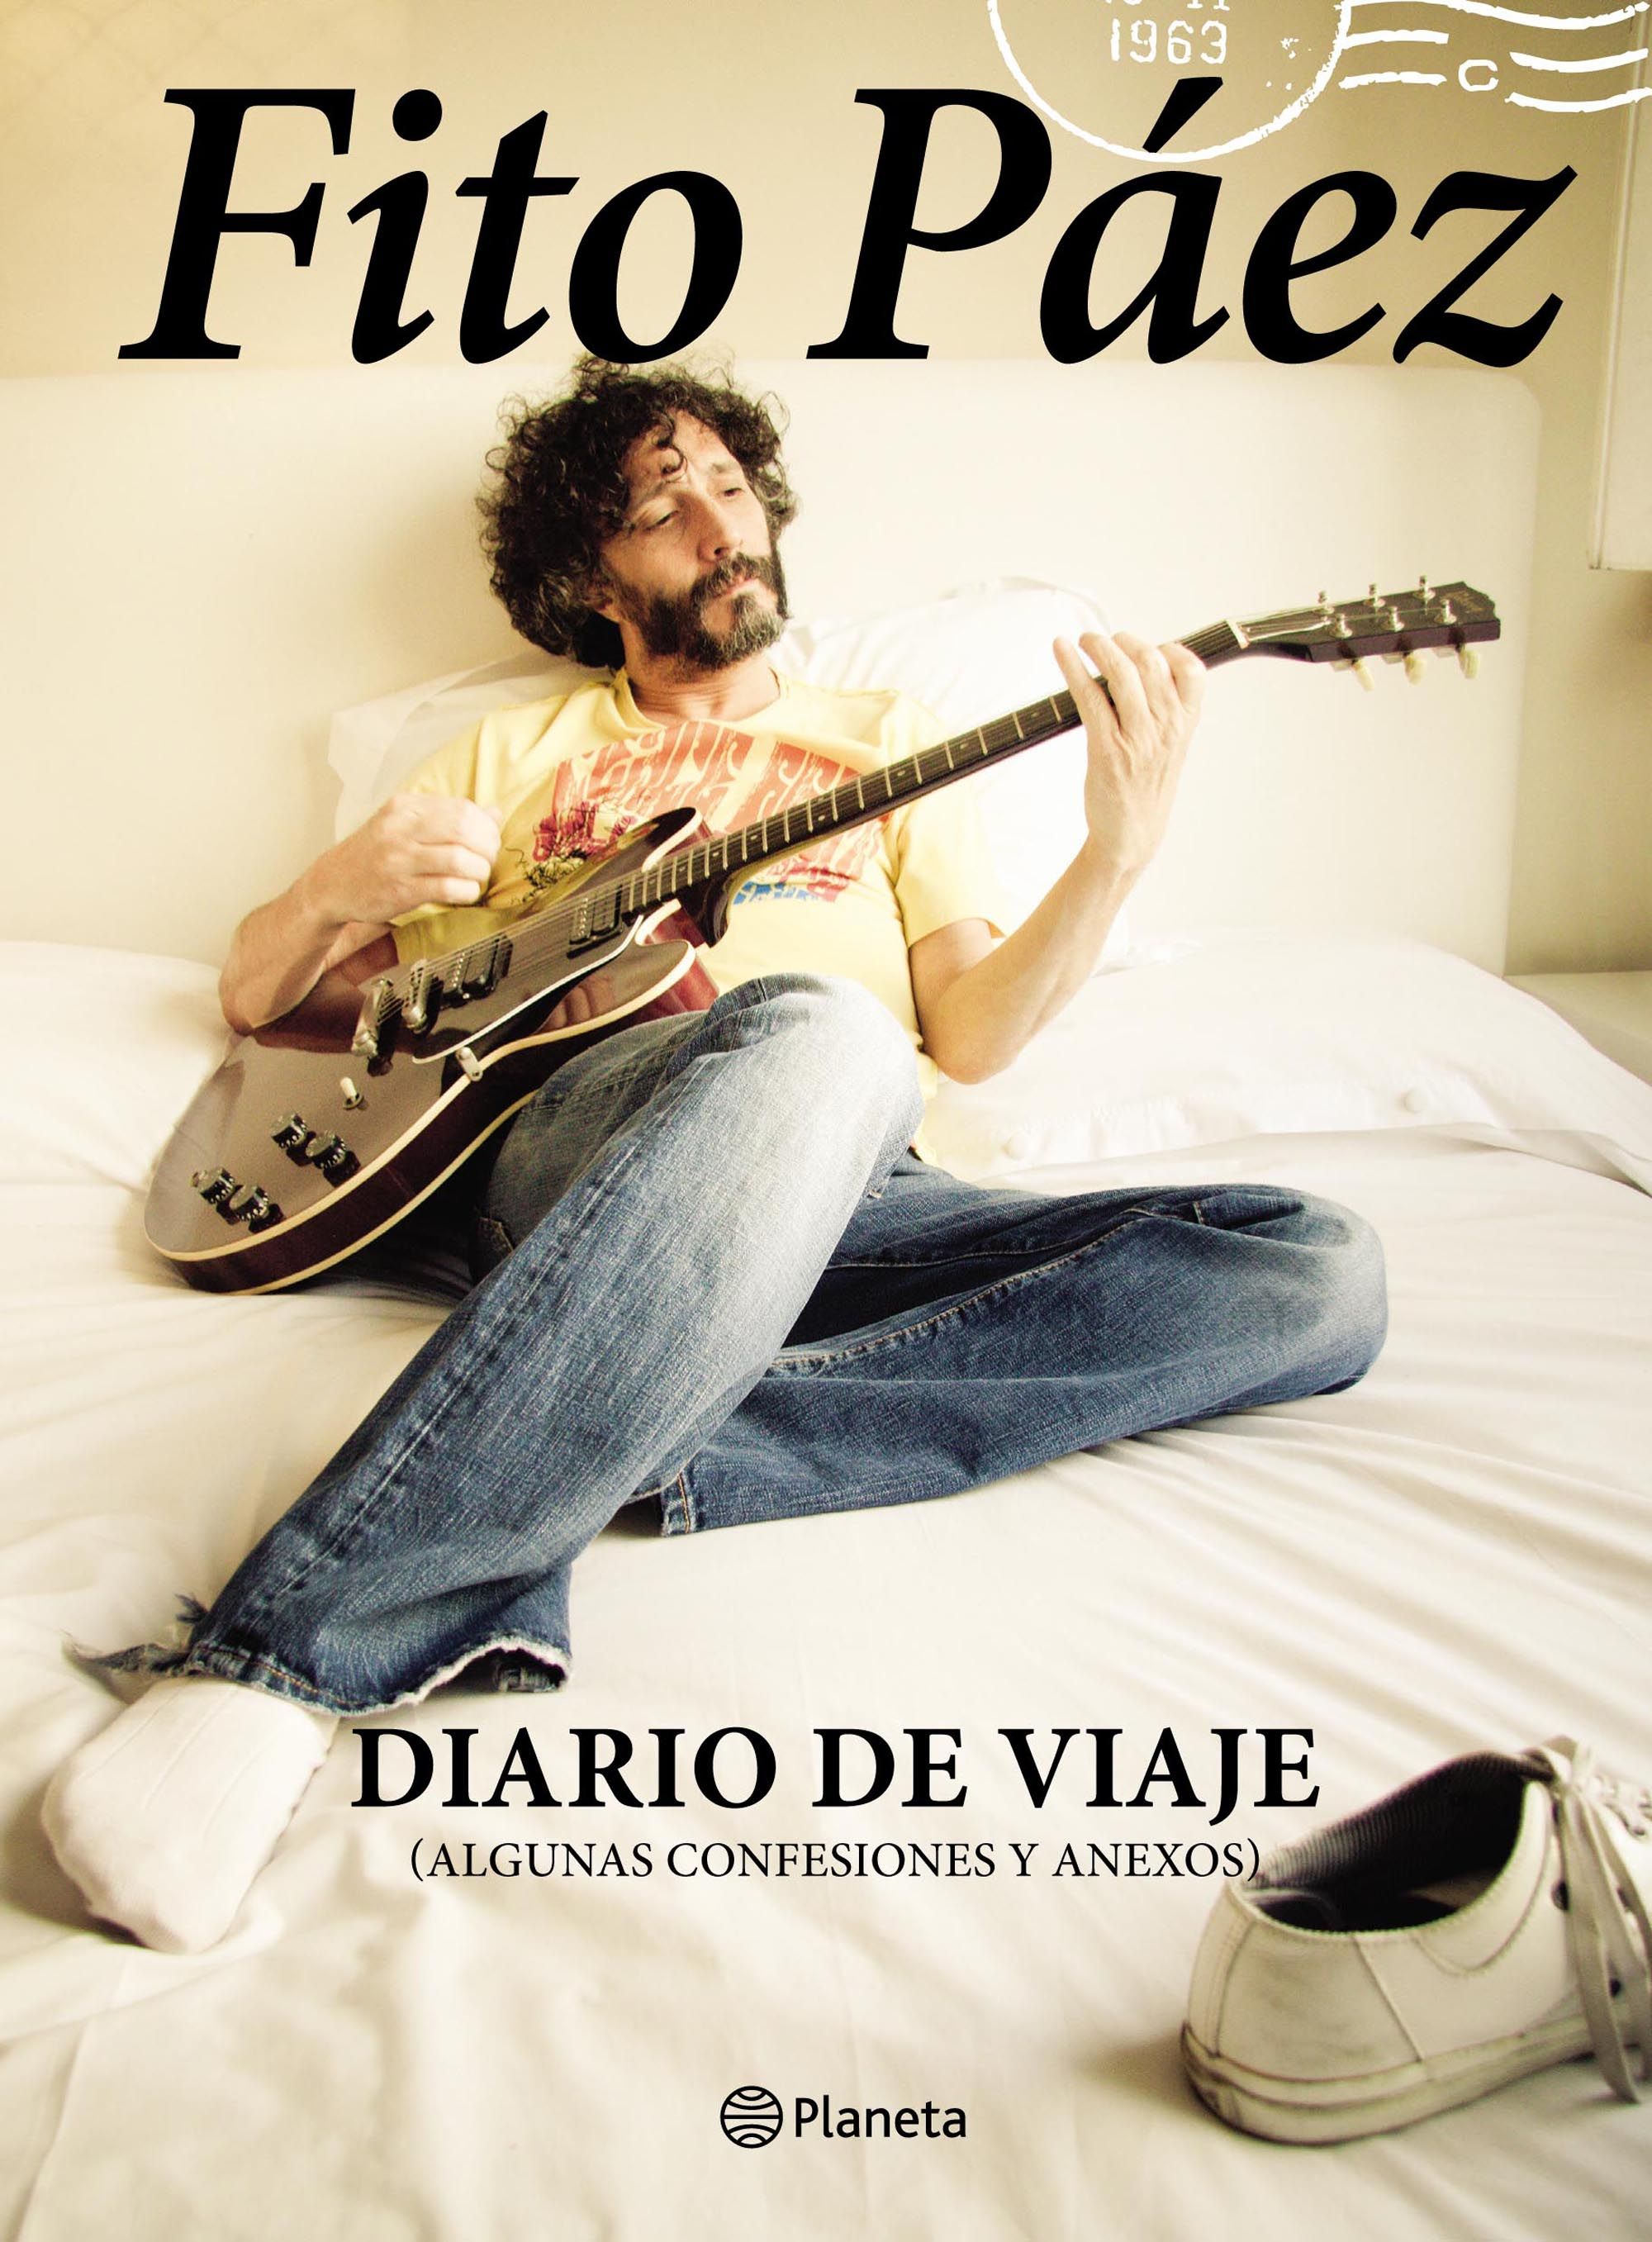 Diario de viaje - Fito Páez